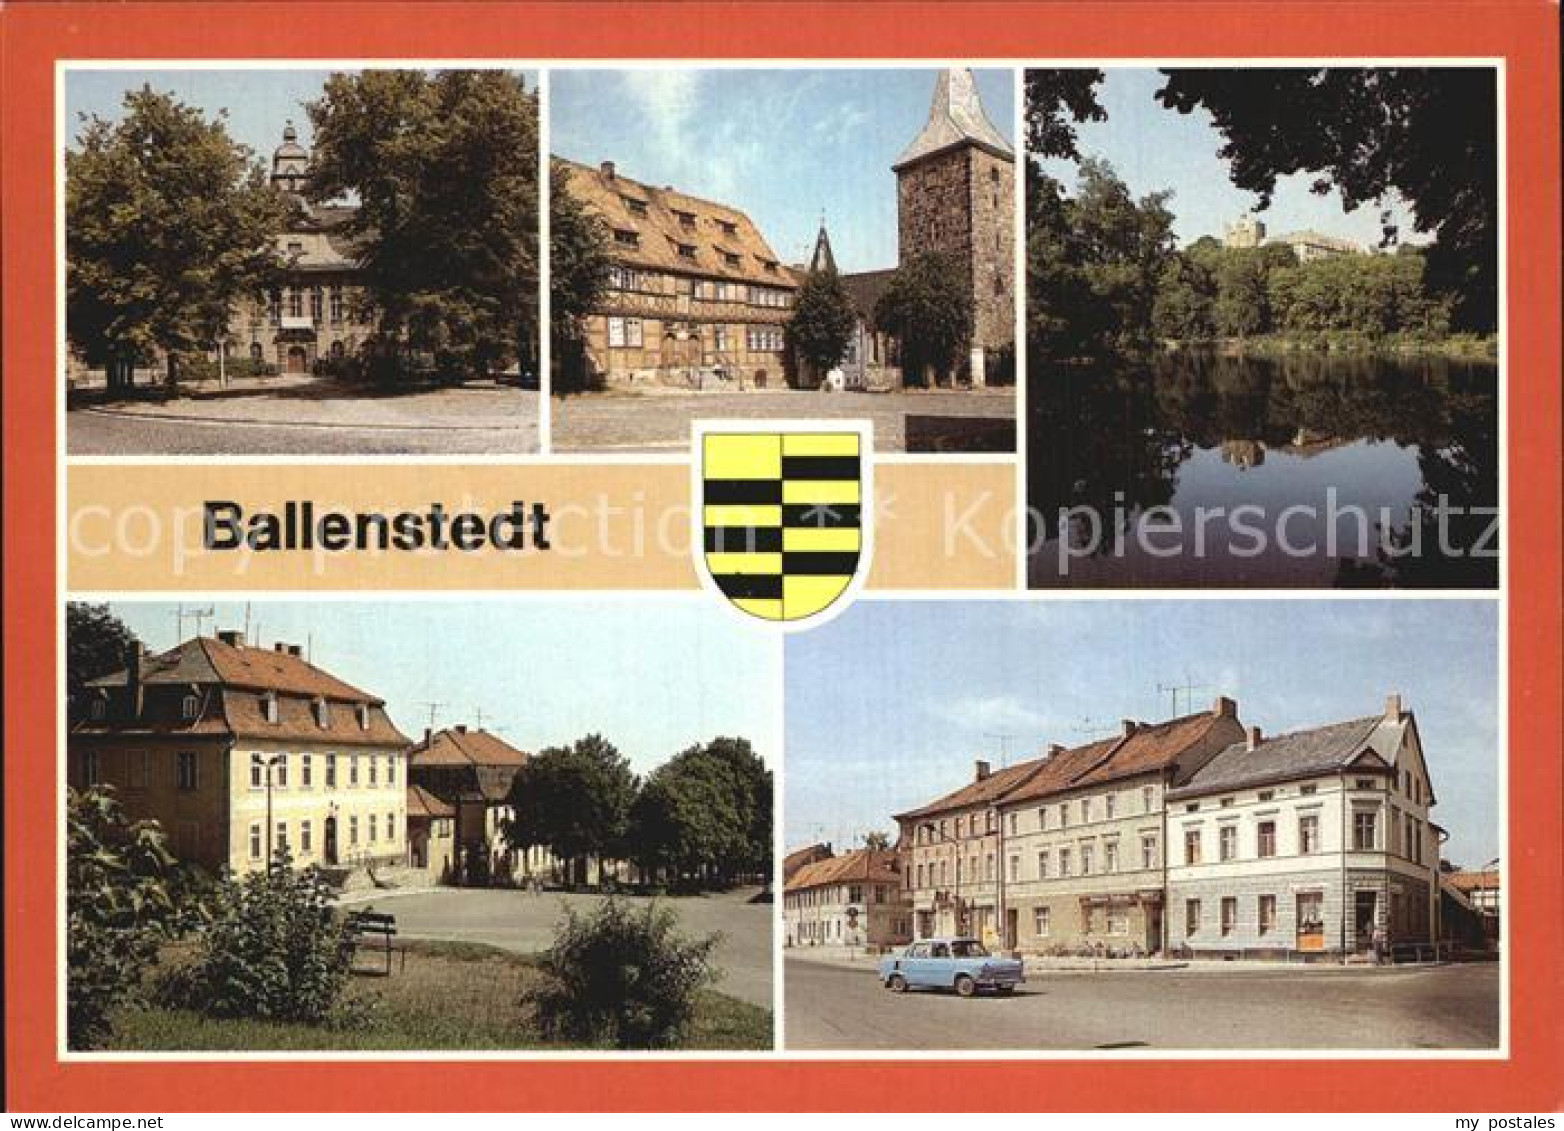 72550688 Ballenstedt Rathaus Alter Markt Schlossteich Wilhelm Pieck Allee Ballen - Ballenstedt